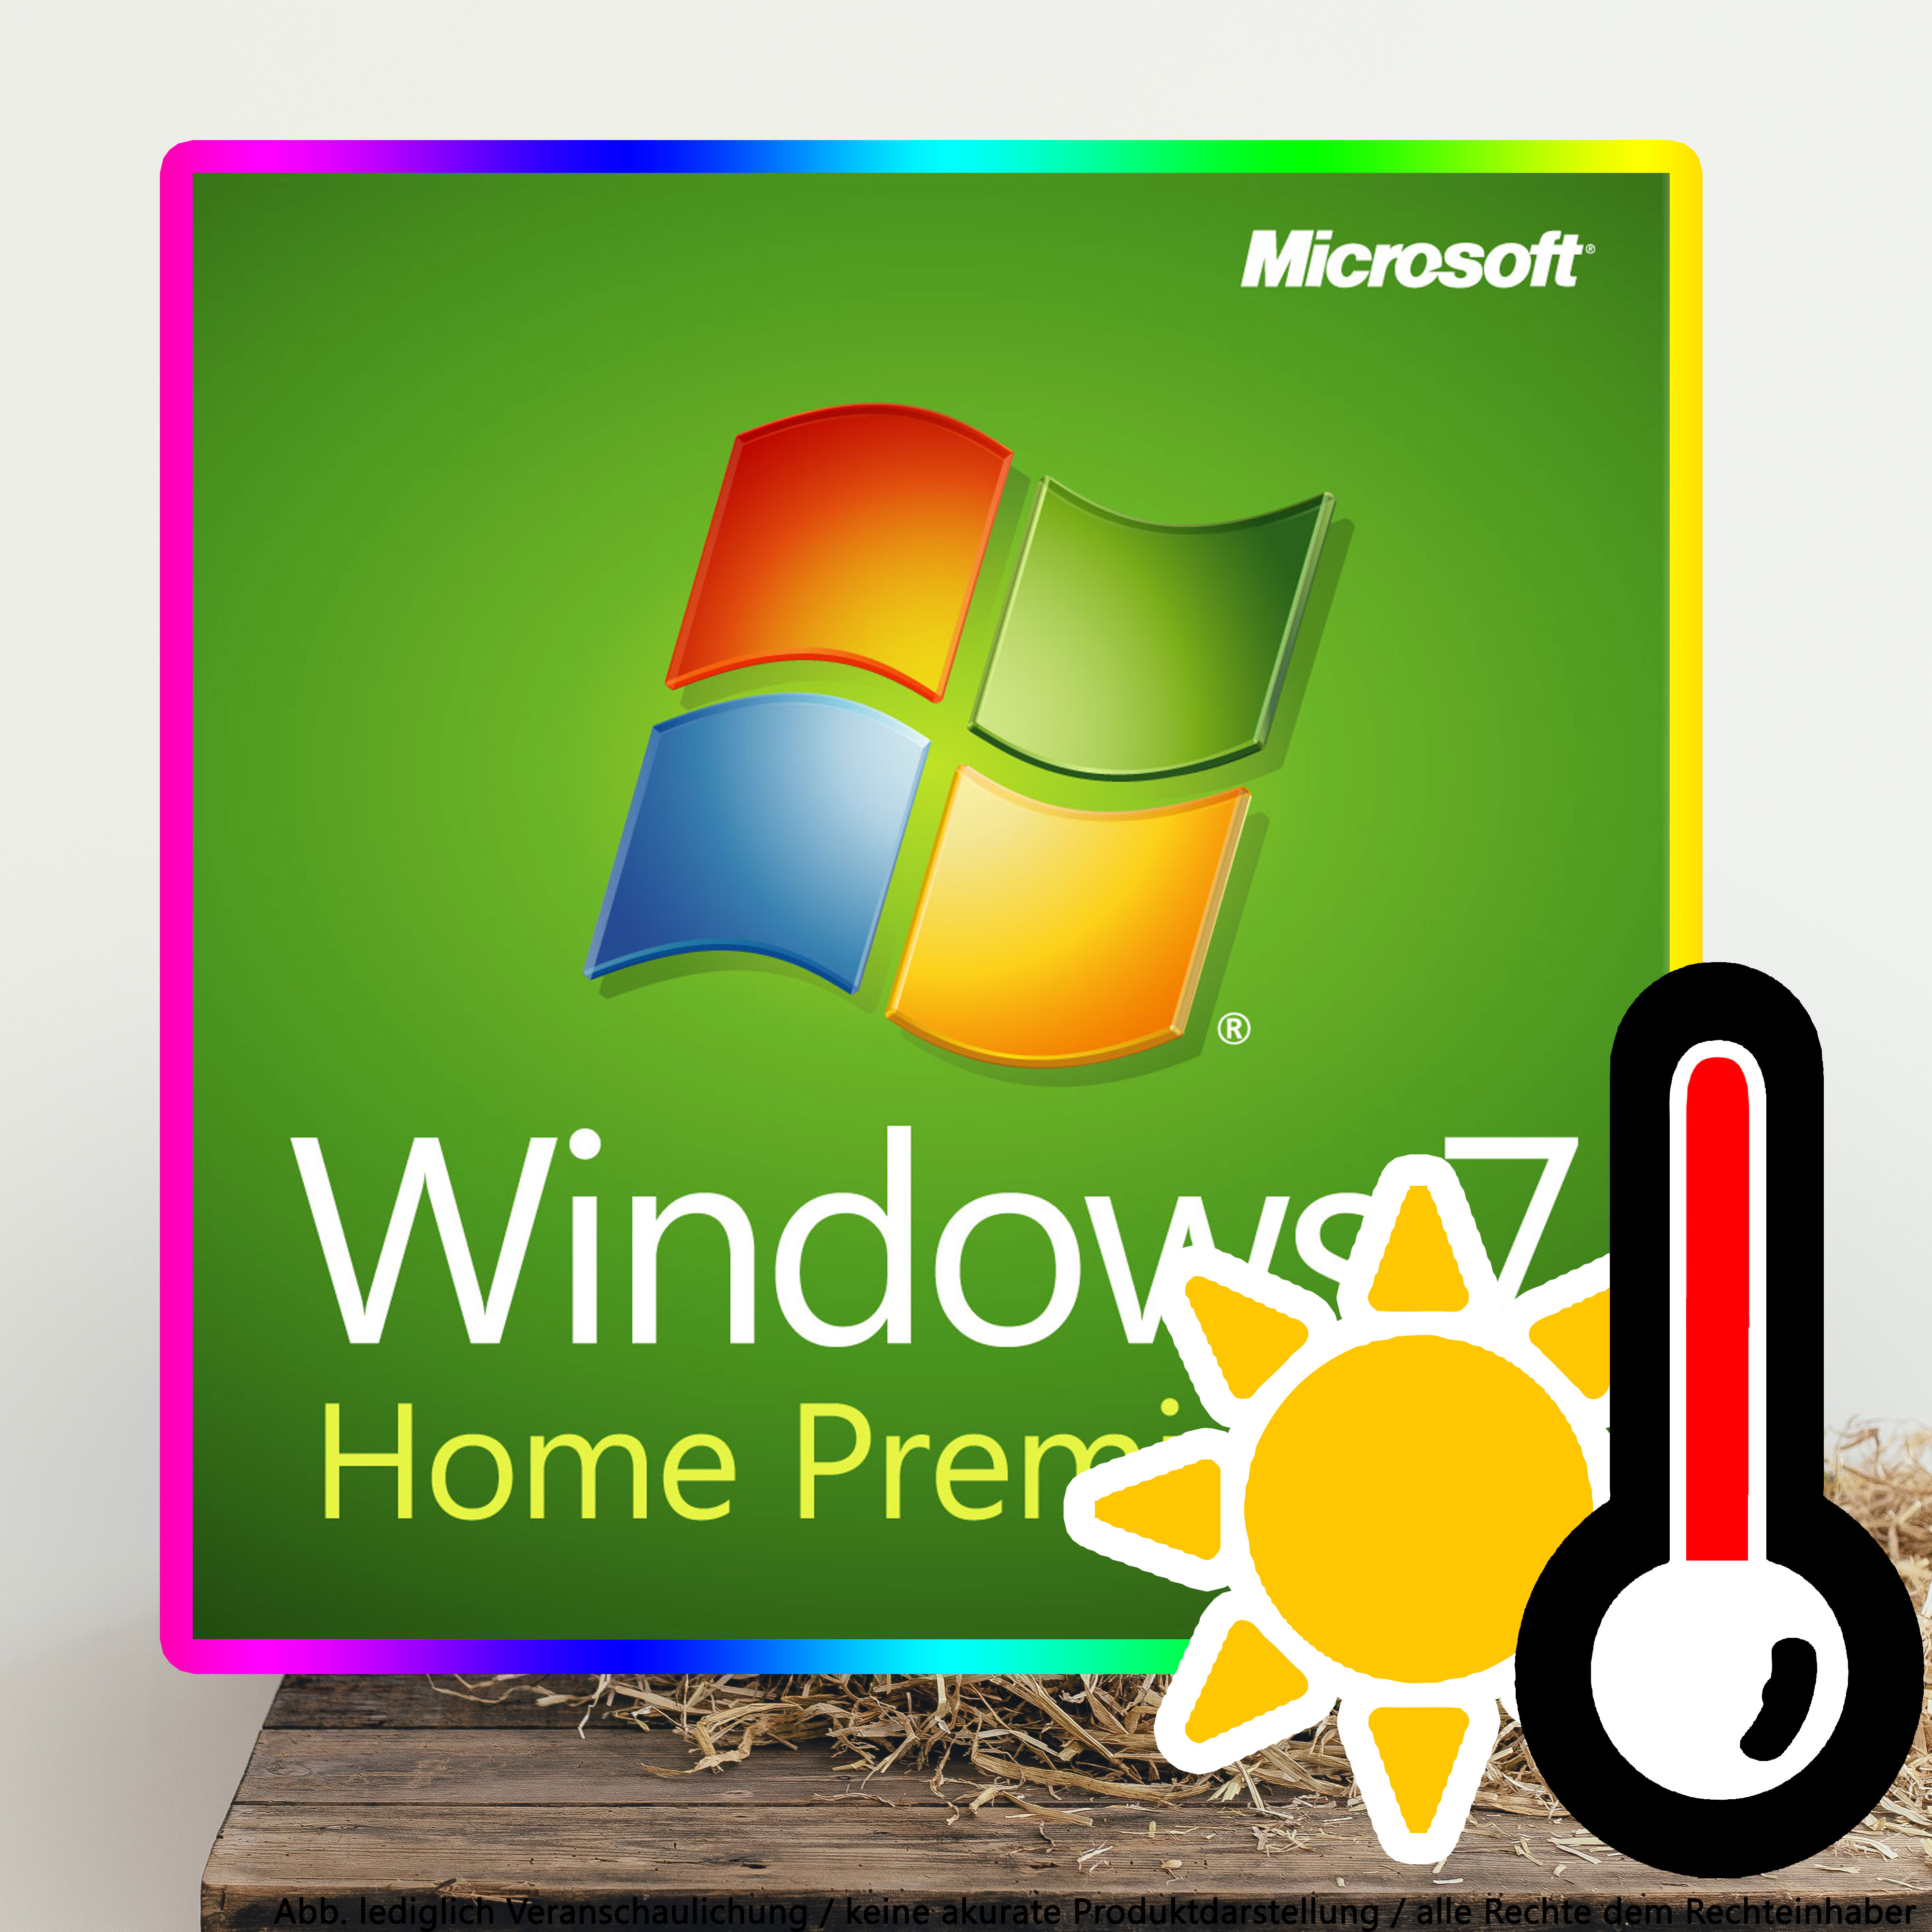 windows 7 home premium